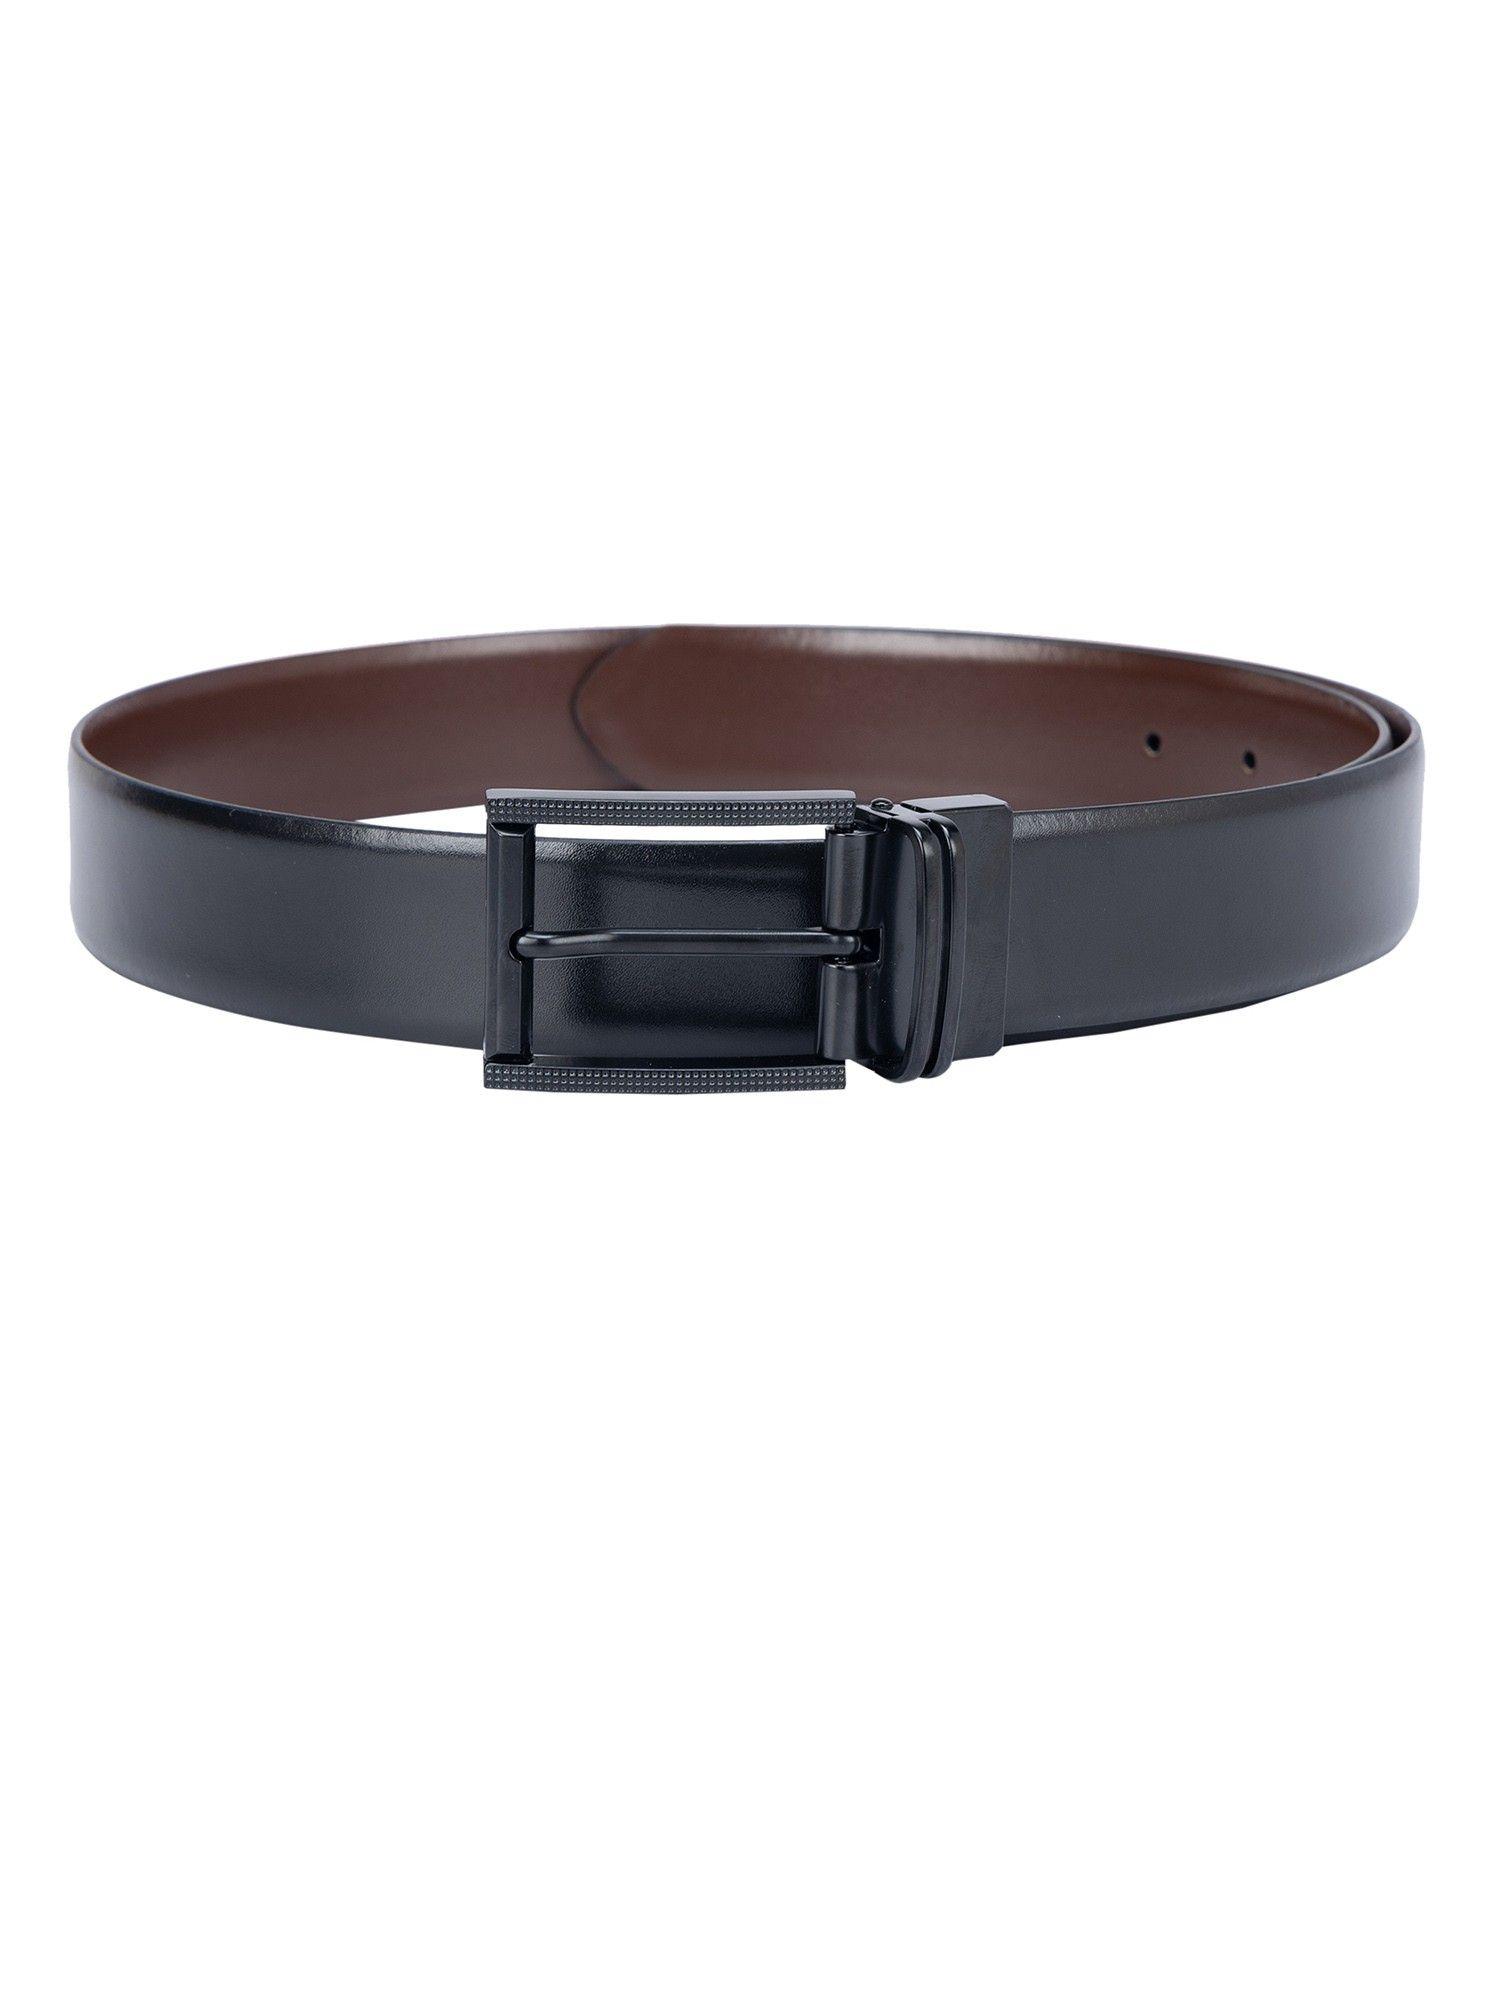 solid leather black & brown reversible belt bm-3309-35r-olblkbrnpln